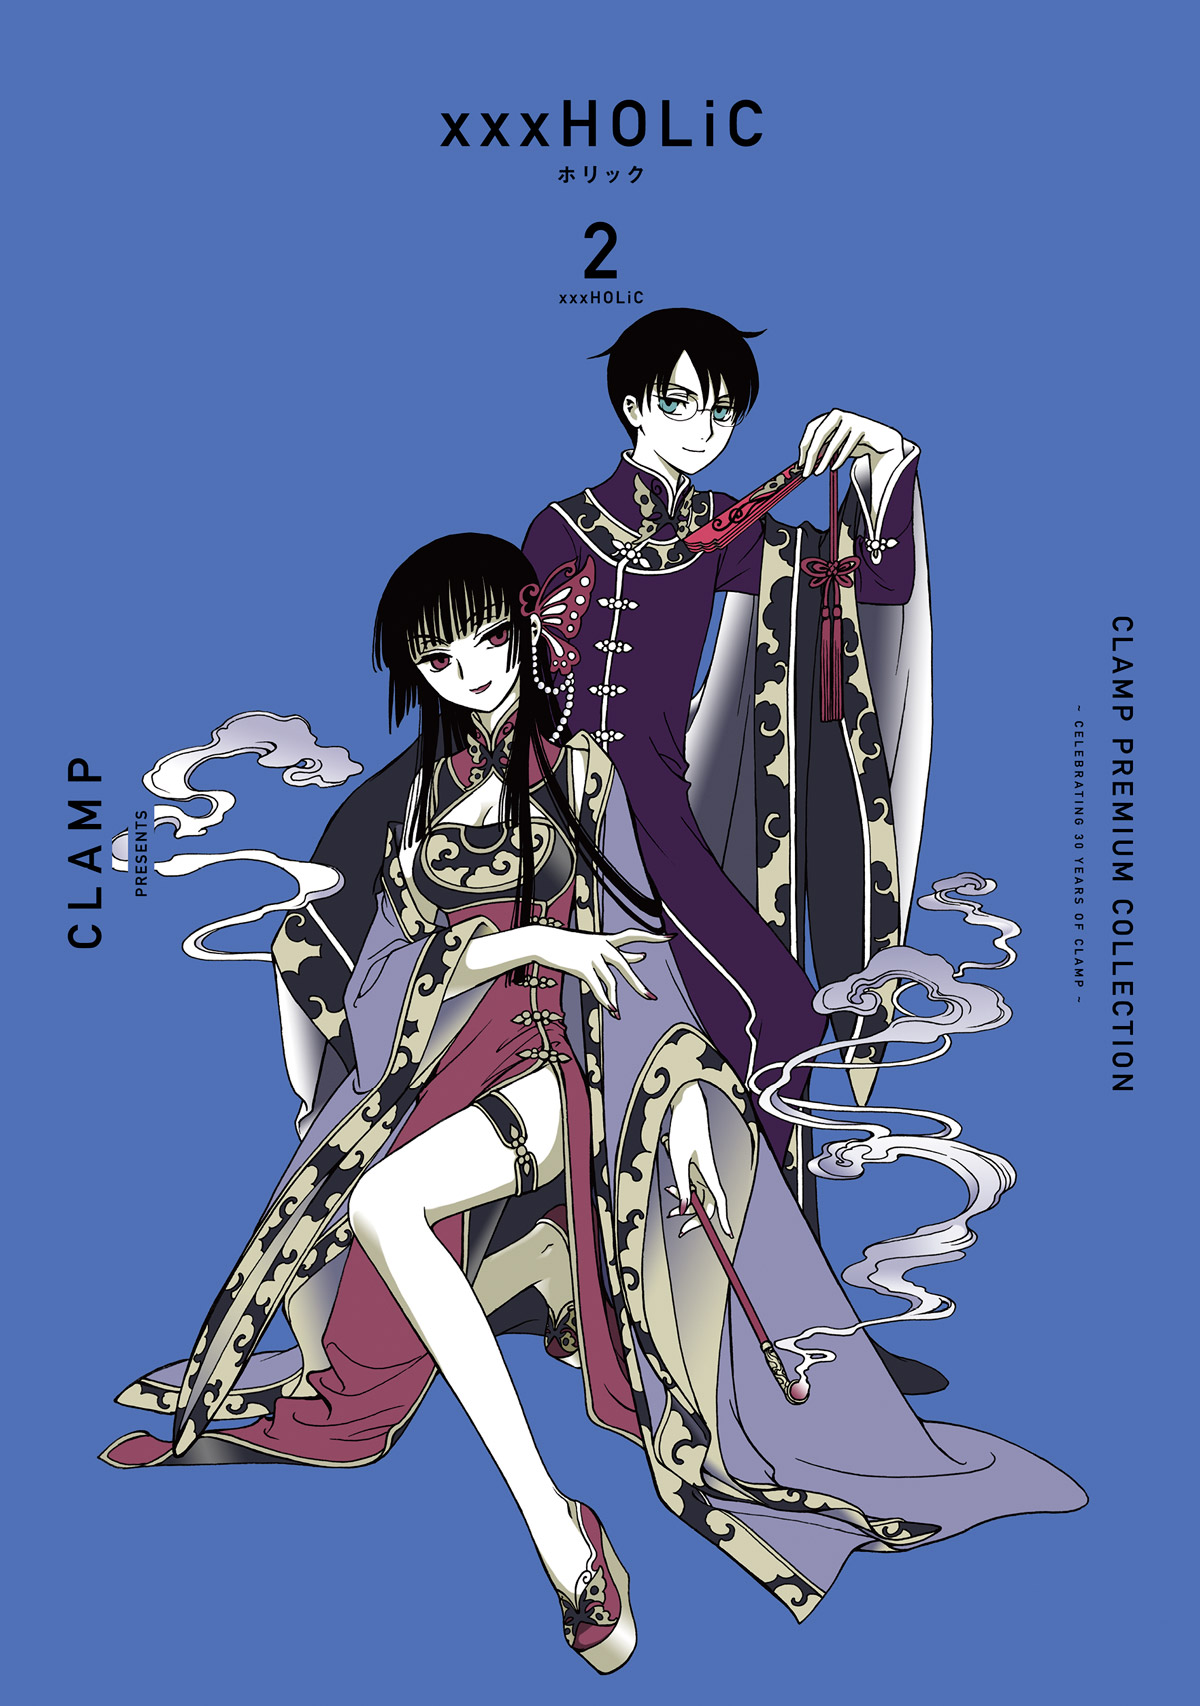 Cardcaptor Sakura et autres mangas [CLAMP] - Page 6 Xxxholic02_cpc